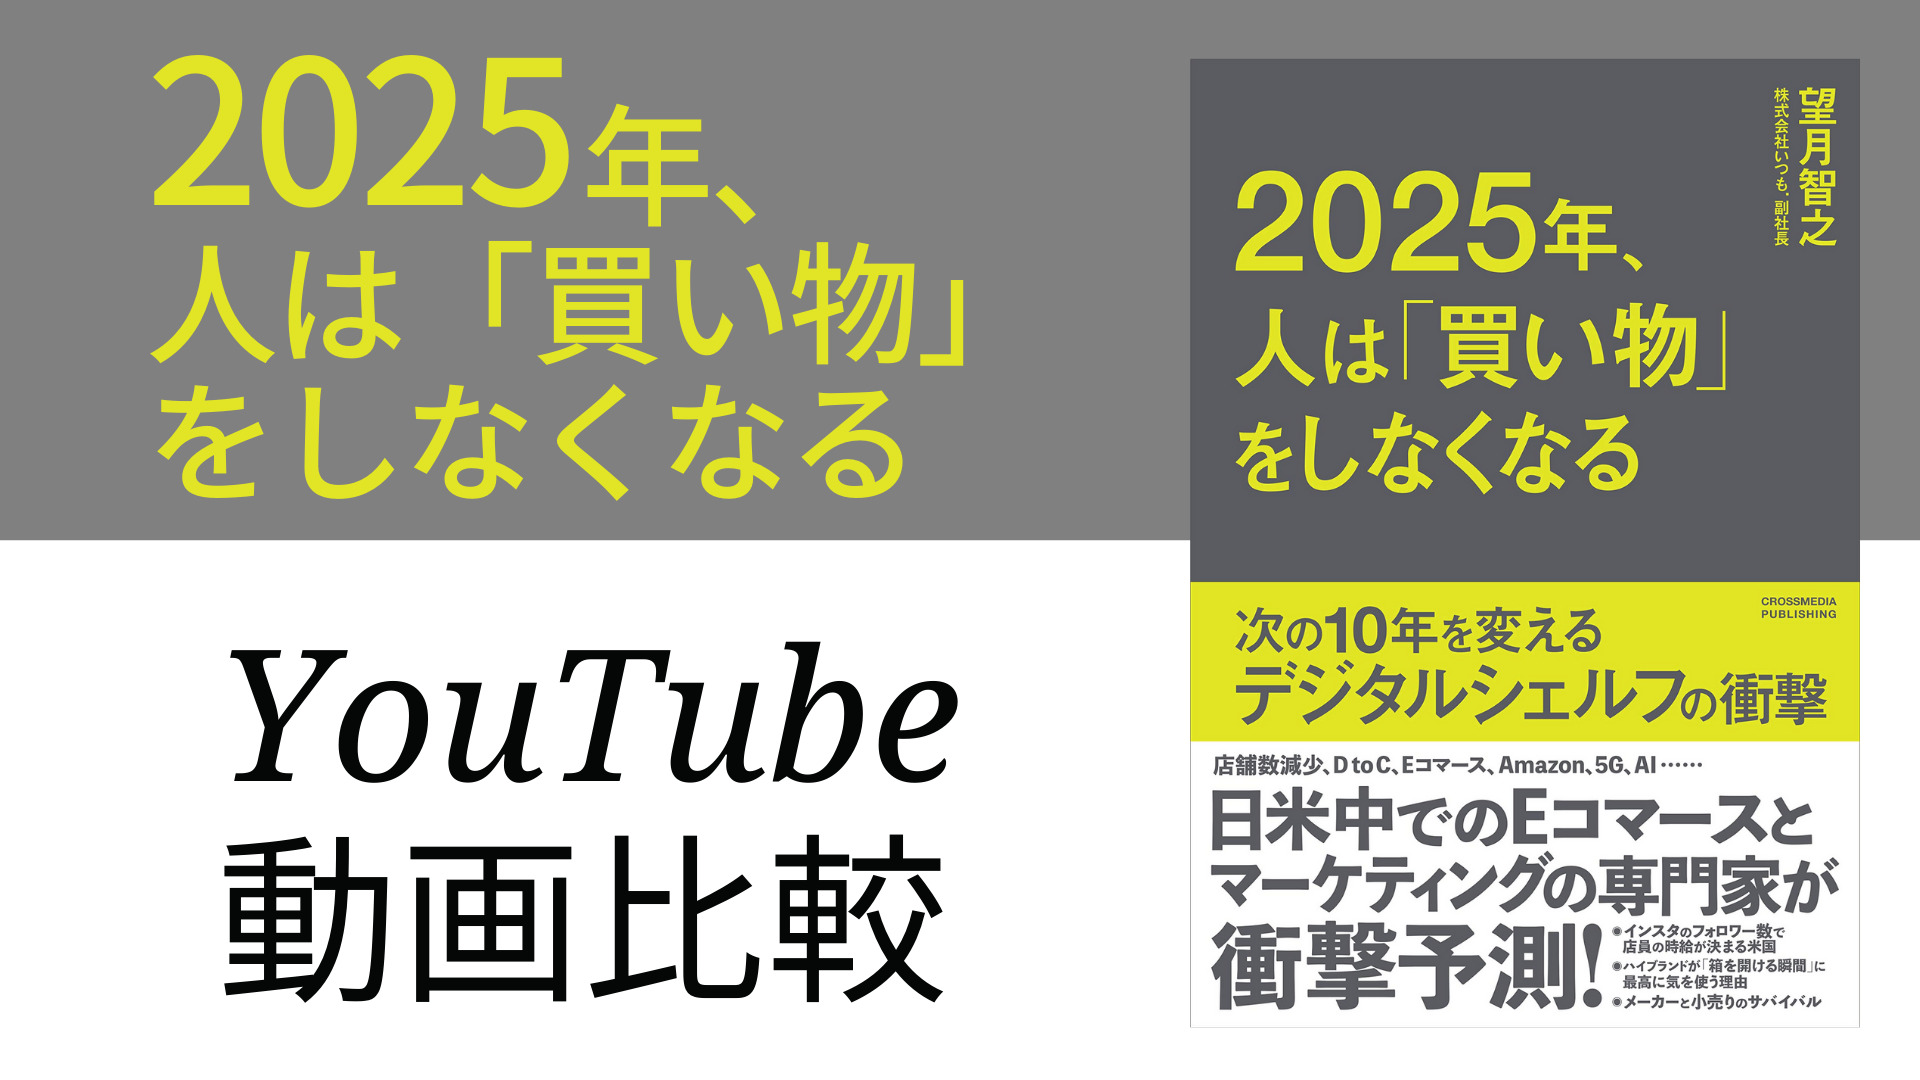 2025年、人は「買い物」をしなくなる YouTube動画比較